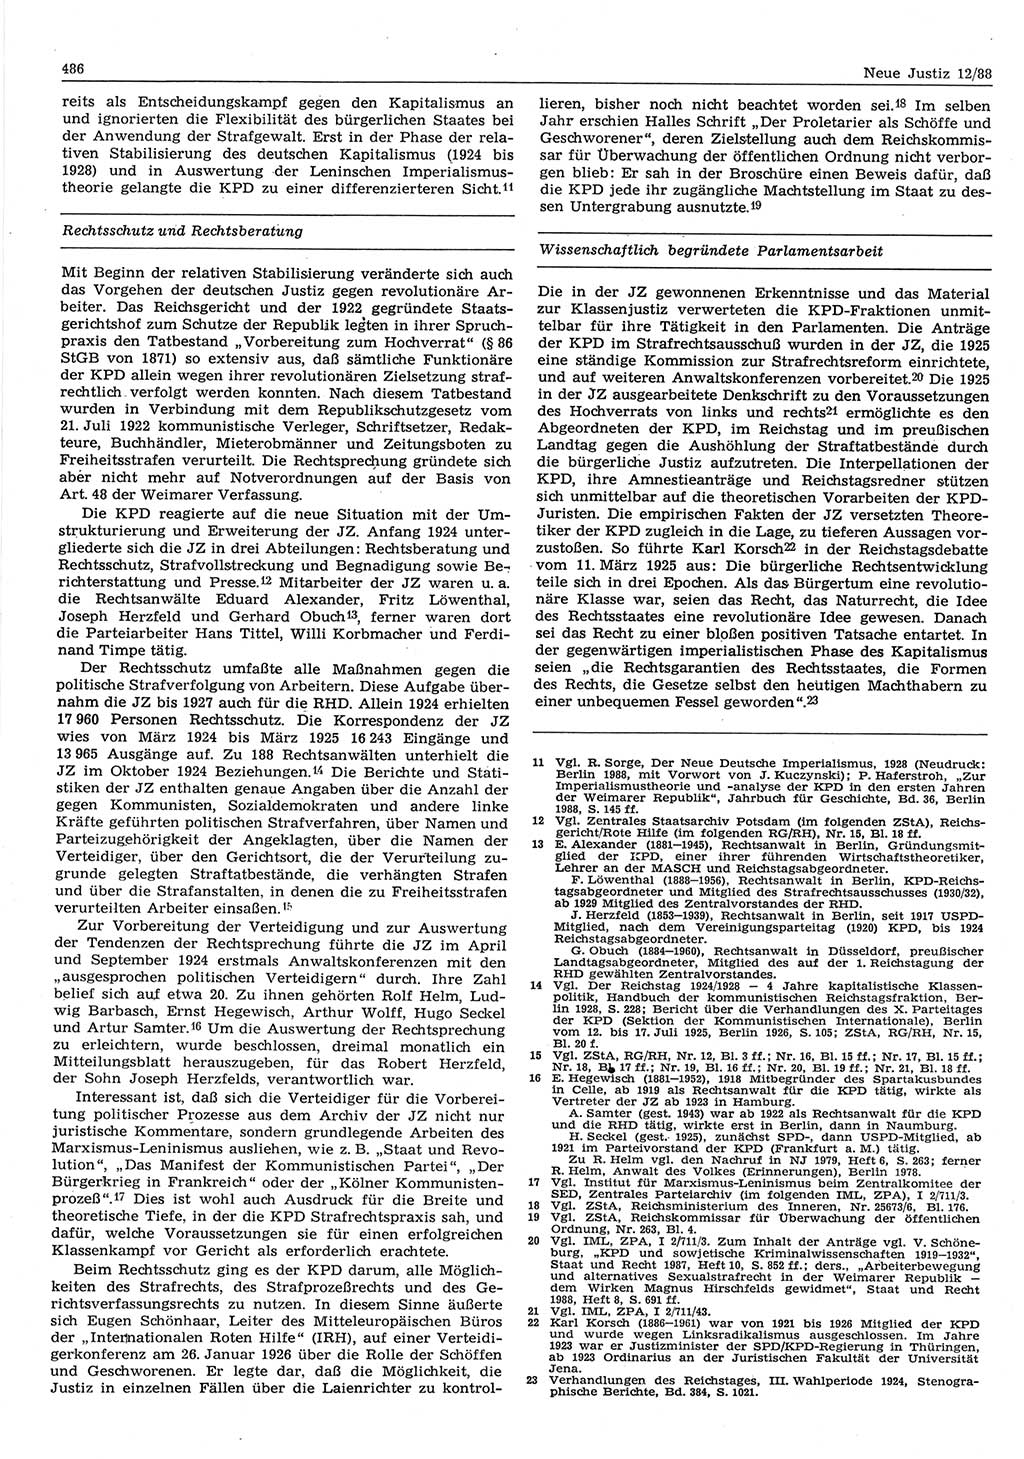 Neue Justiz (NJ), Zeitschrift für sozialistisches Recht und Gesetzlichkeit [Deutsche Demokratische Republik (DDR)], 42. Jahrgang 1988, Seite 486 (NJ DDR 1988, S. 486)